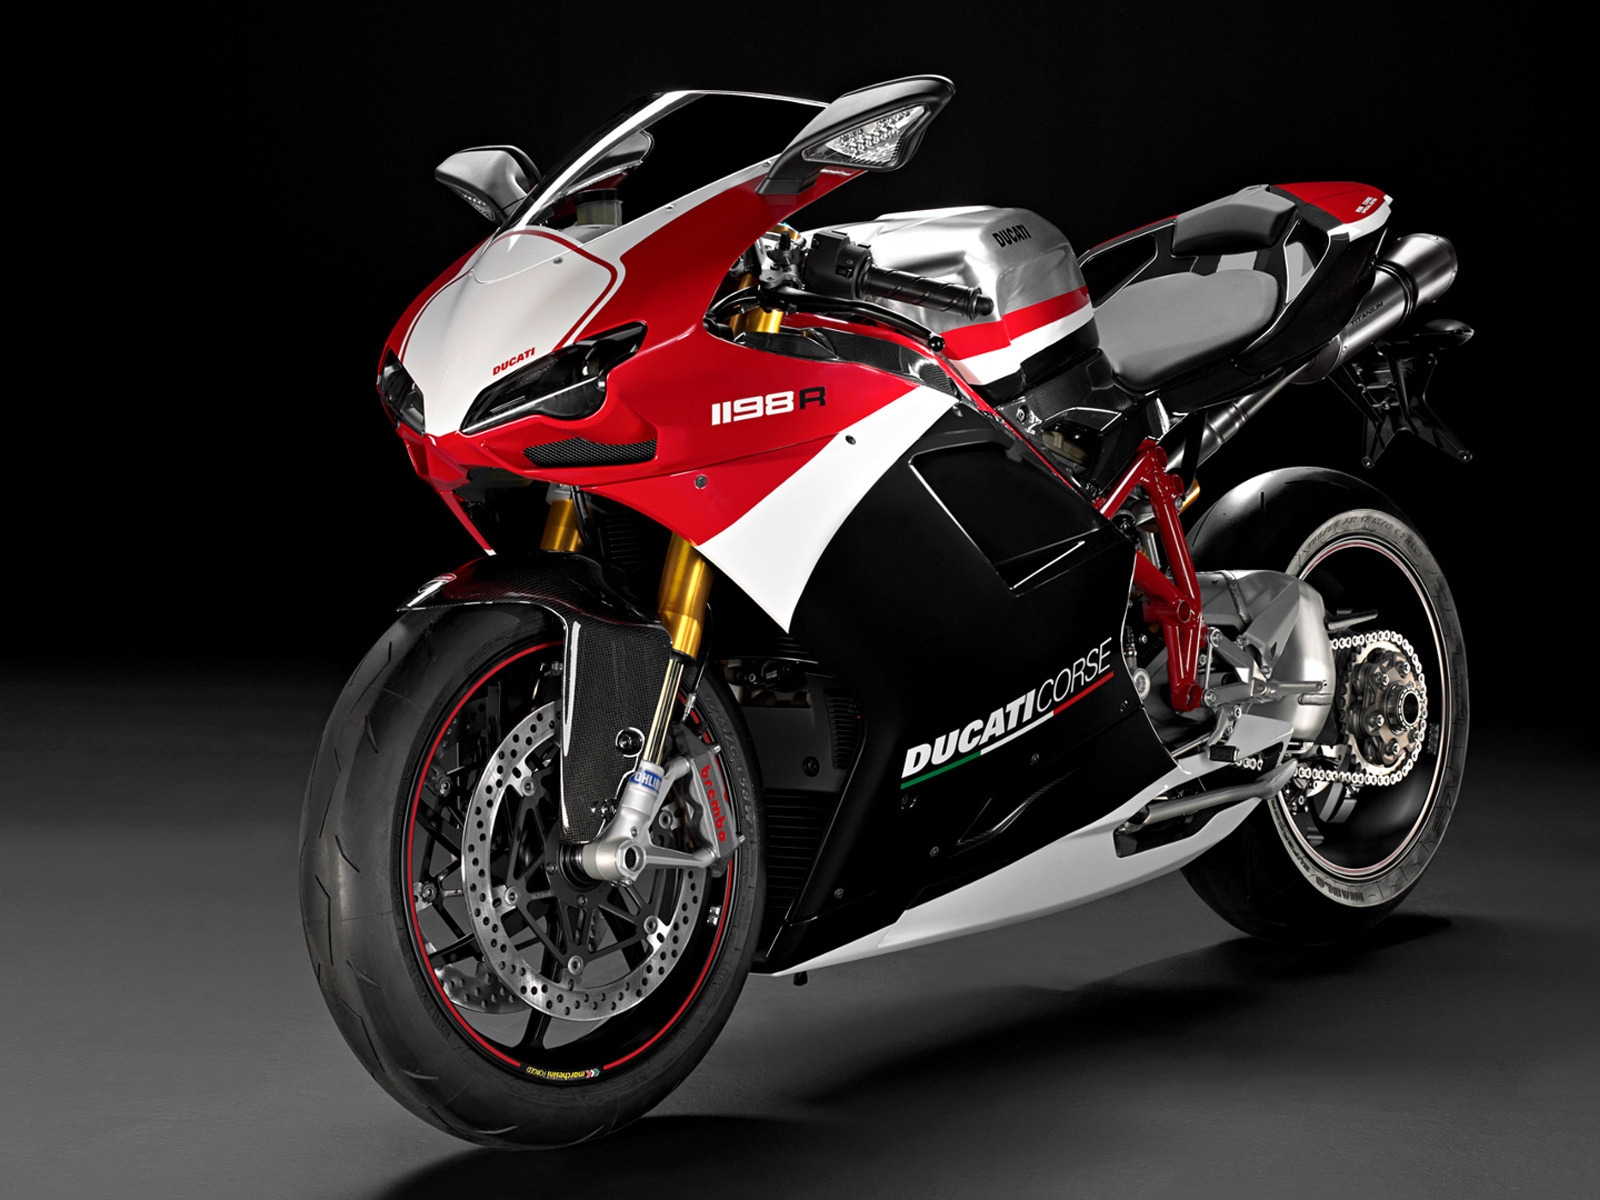 Ducati Superbike-1198-R-Corse for 1600 x 1200 resolution